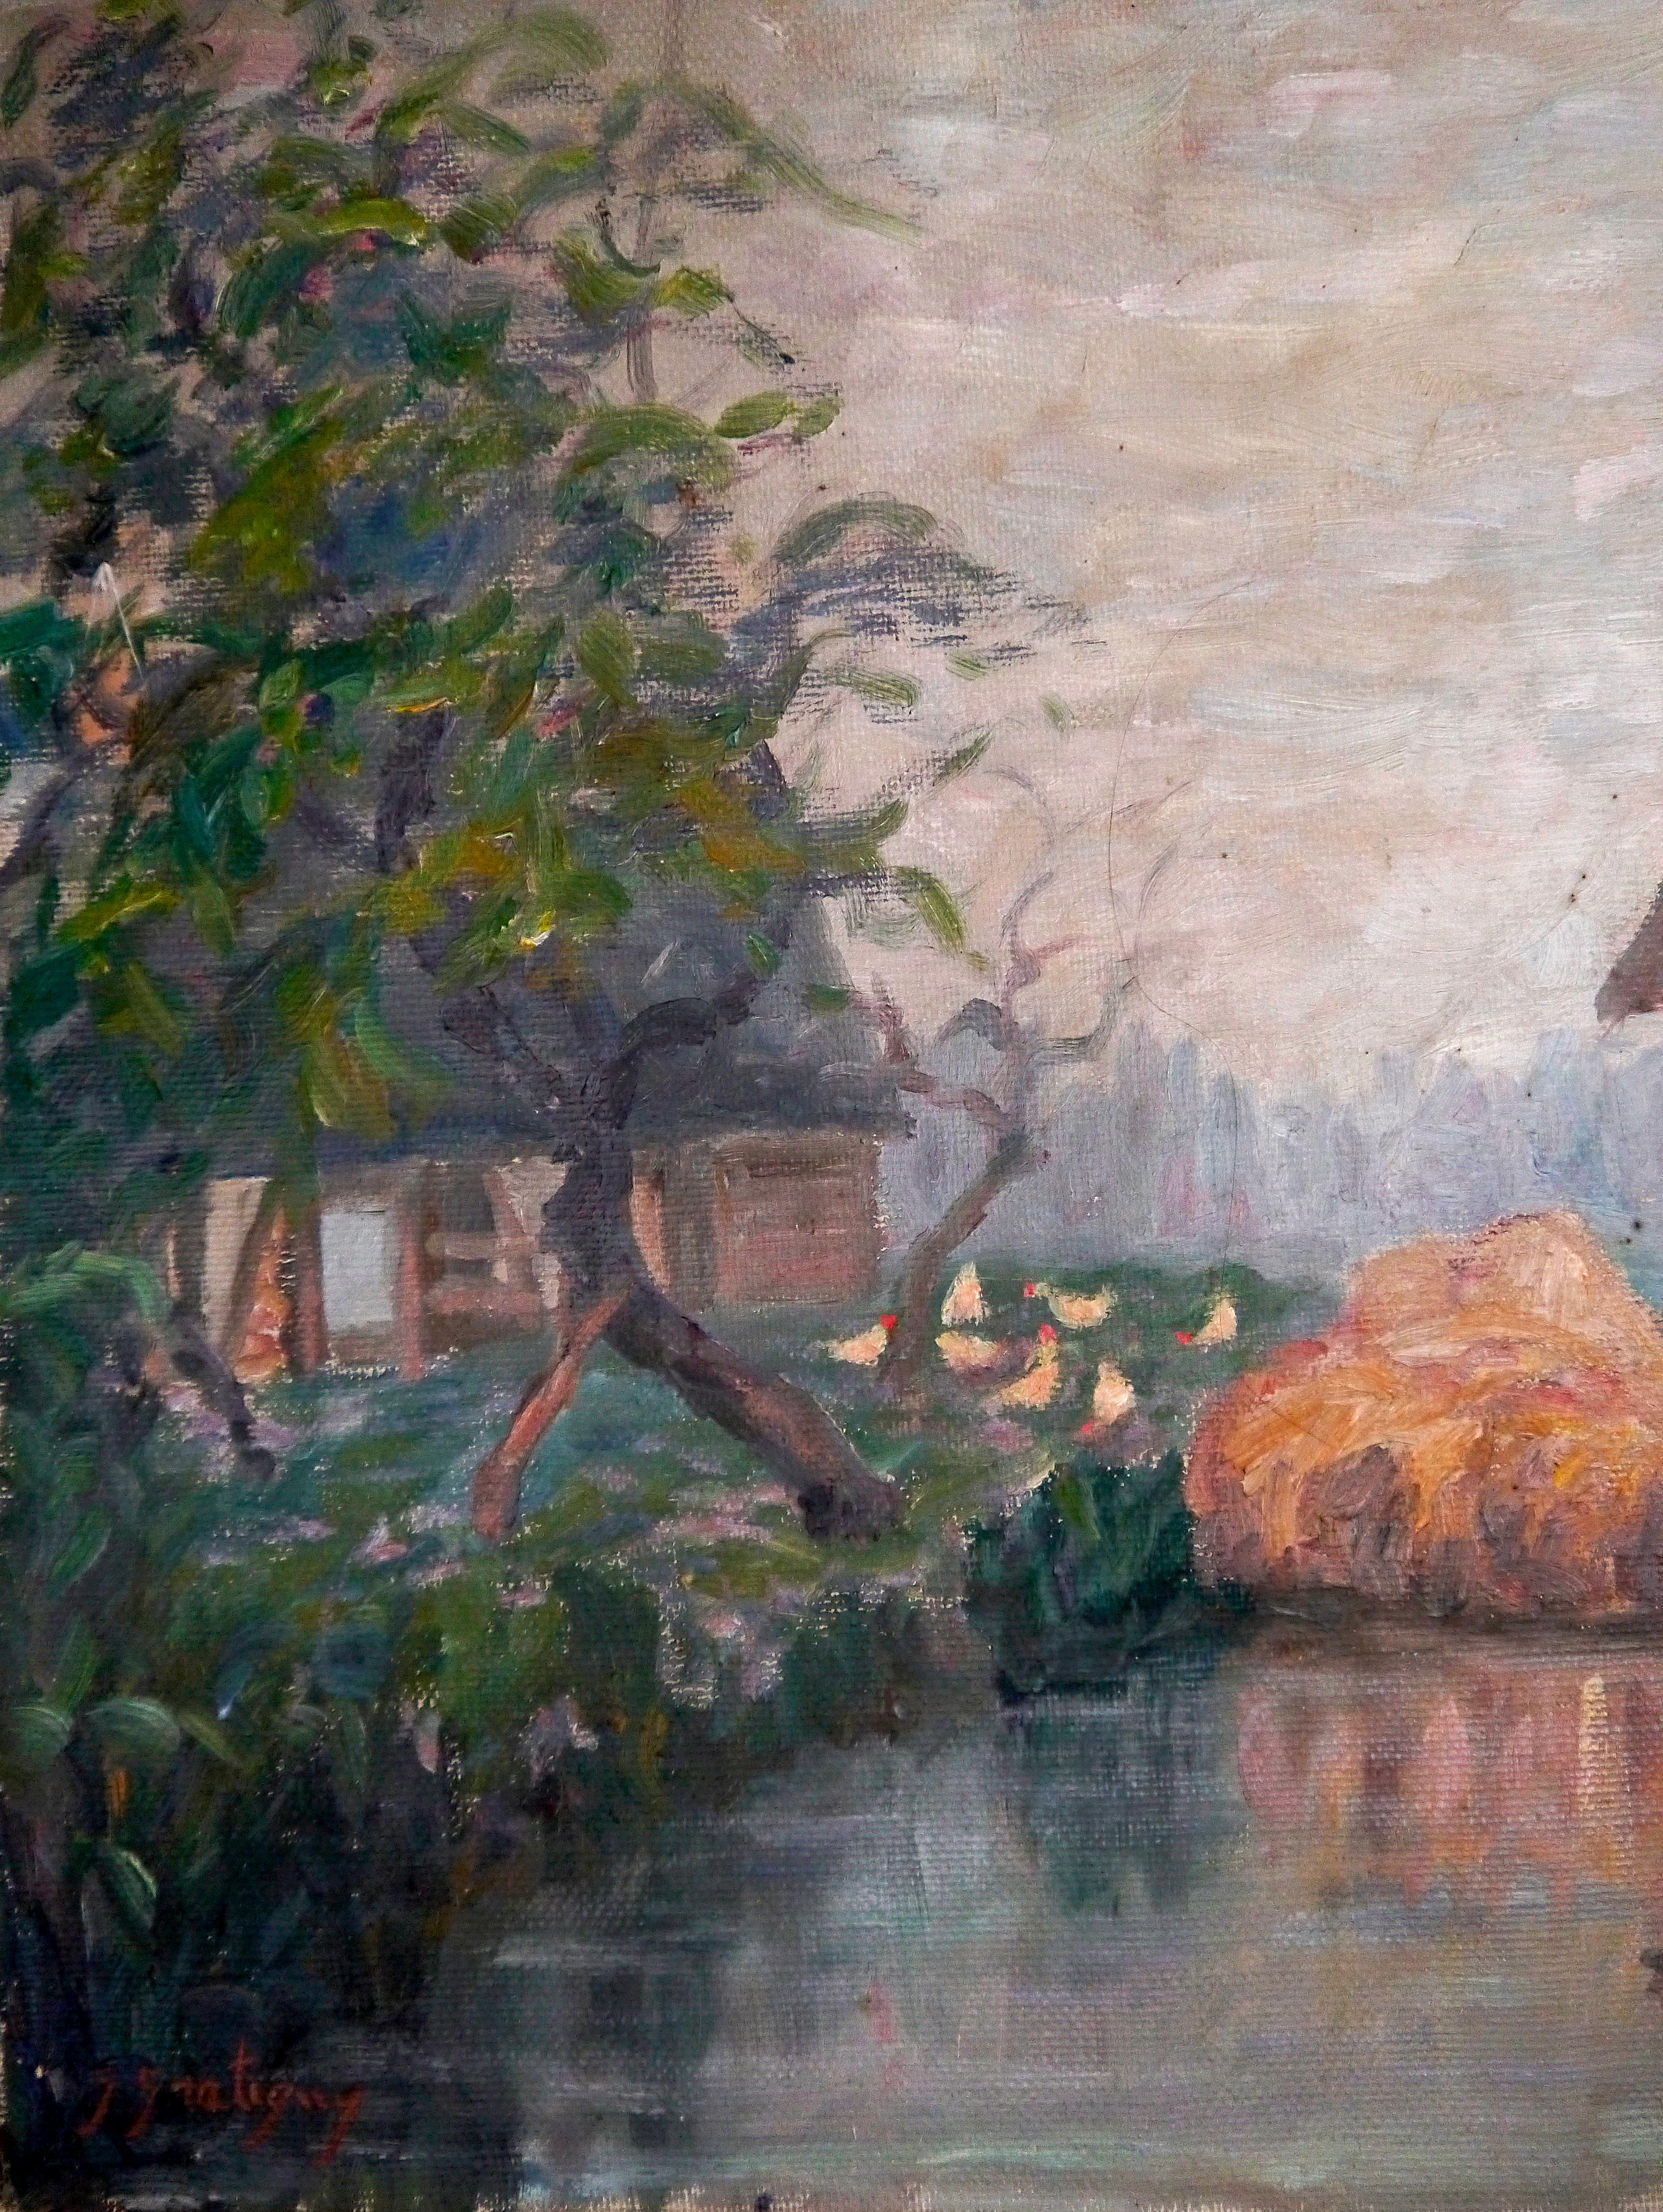  Paysage rivière et grange _  de Georges Gratigny 

Georges Gratigny était un peintre français du XIX -XX. (1881-1970) Normandie
Il était membre de la société des peintres normands.
On retrouve dans son art l'influence de ses amis André Hardy et